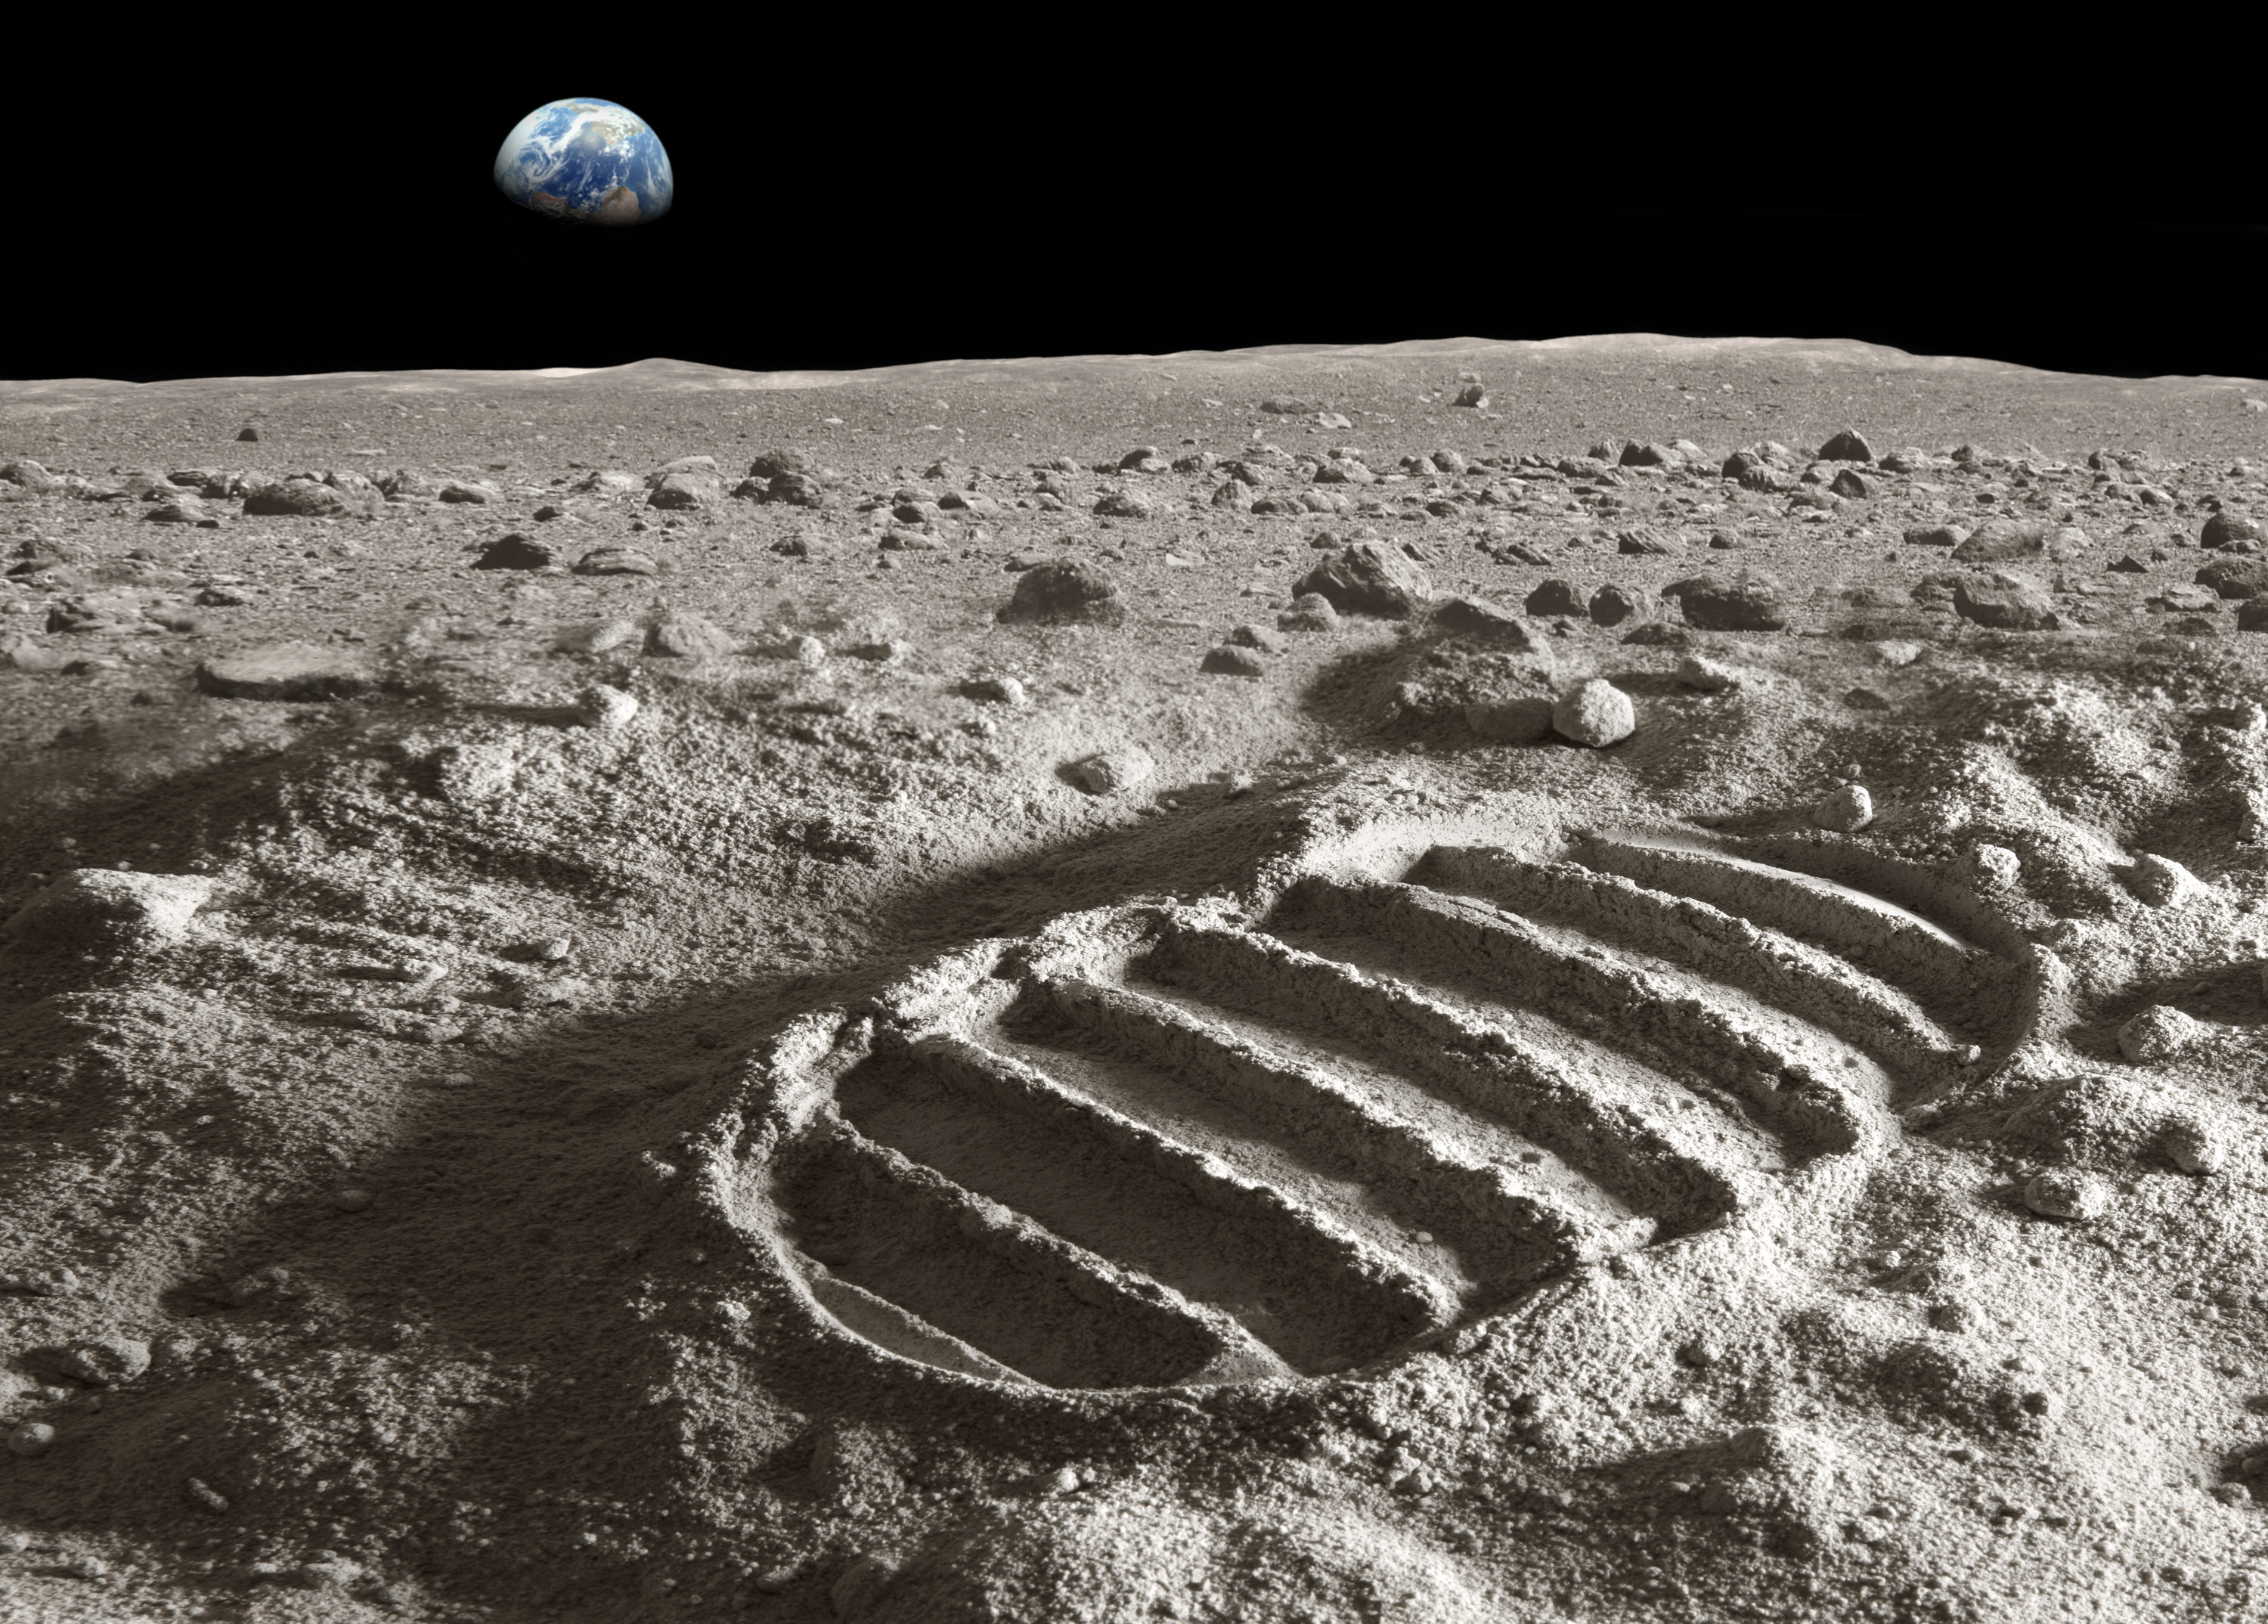 a footprint on the moon